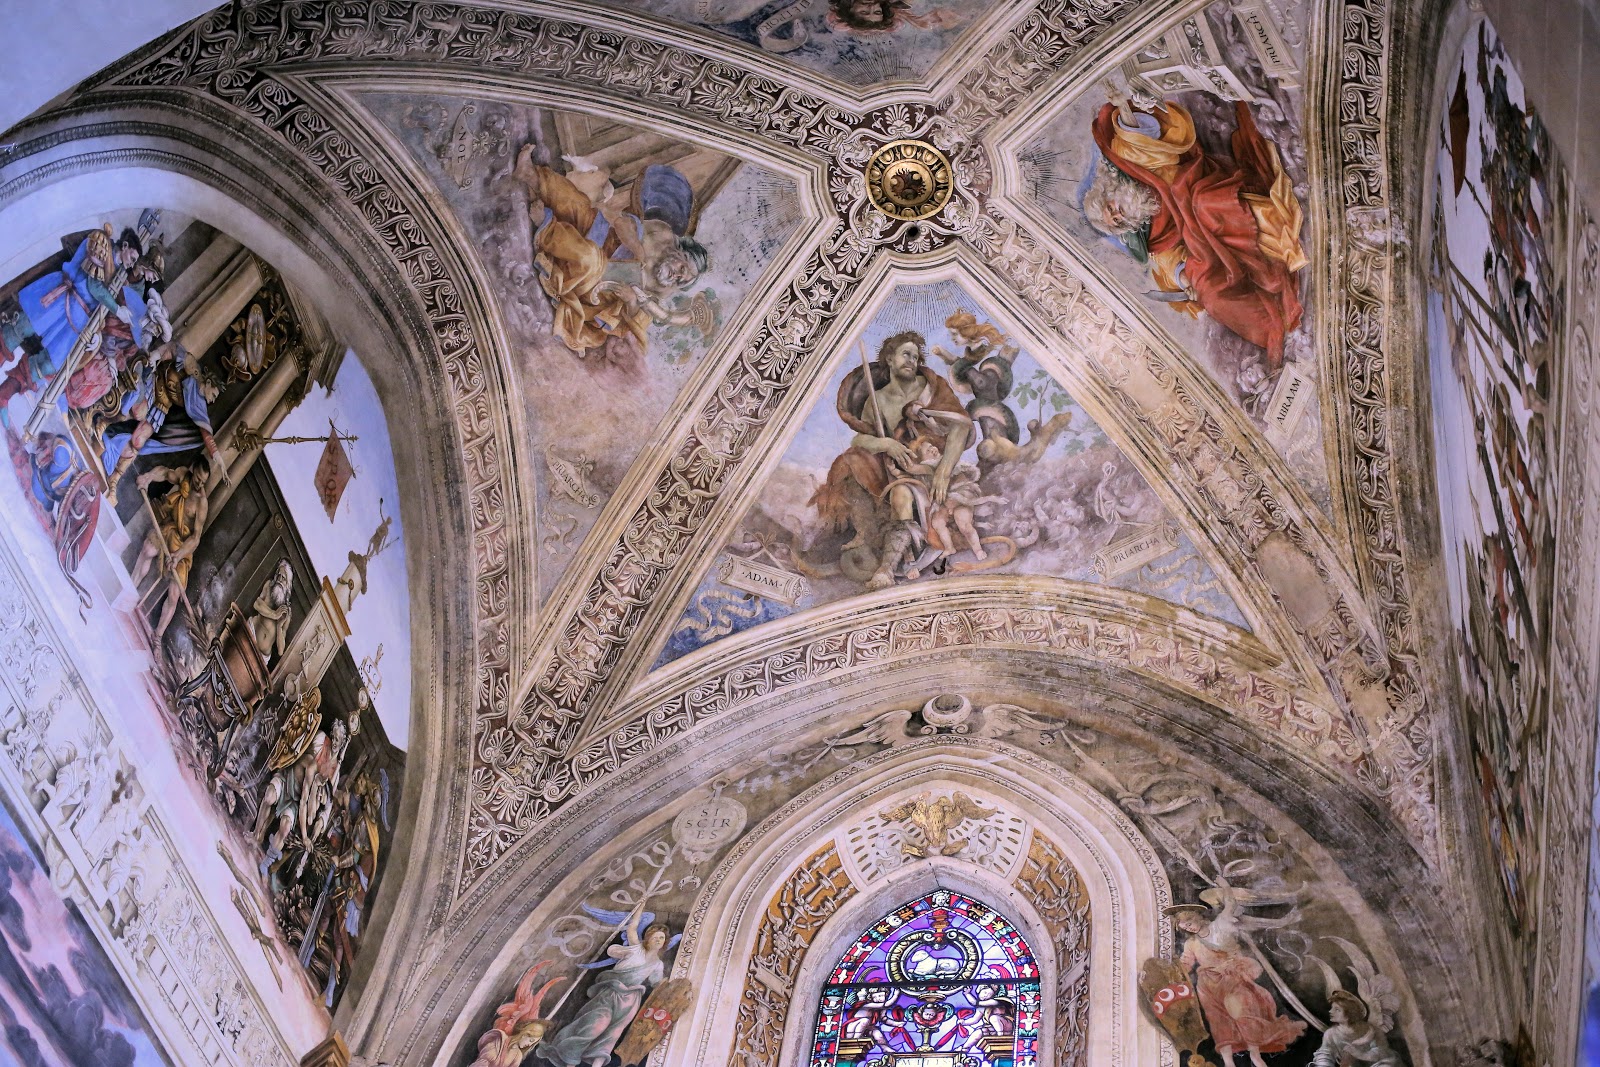 Filippino+Lippi-1457-1504 (32).jpg